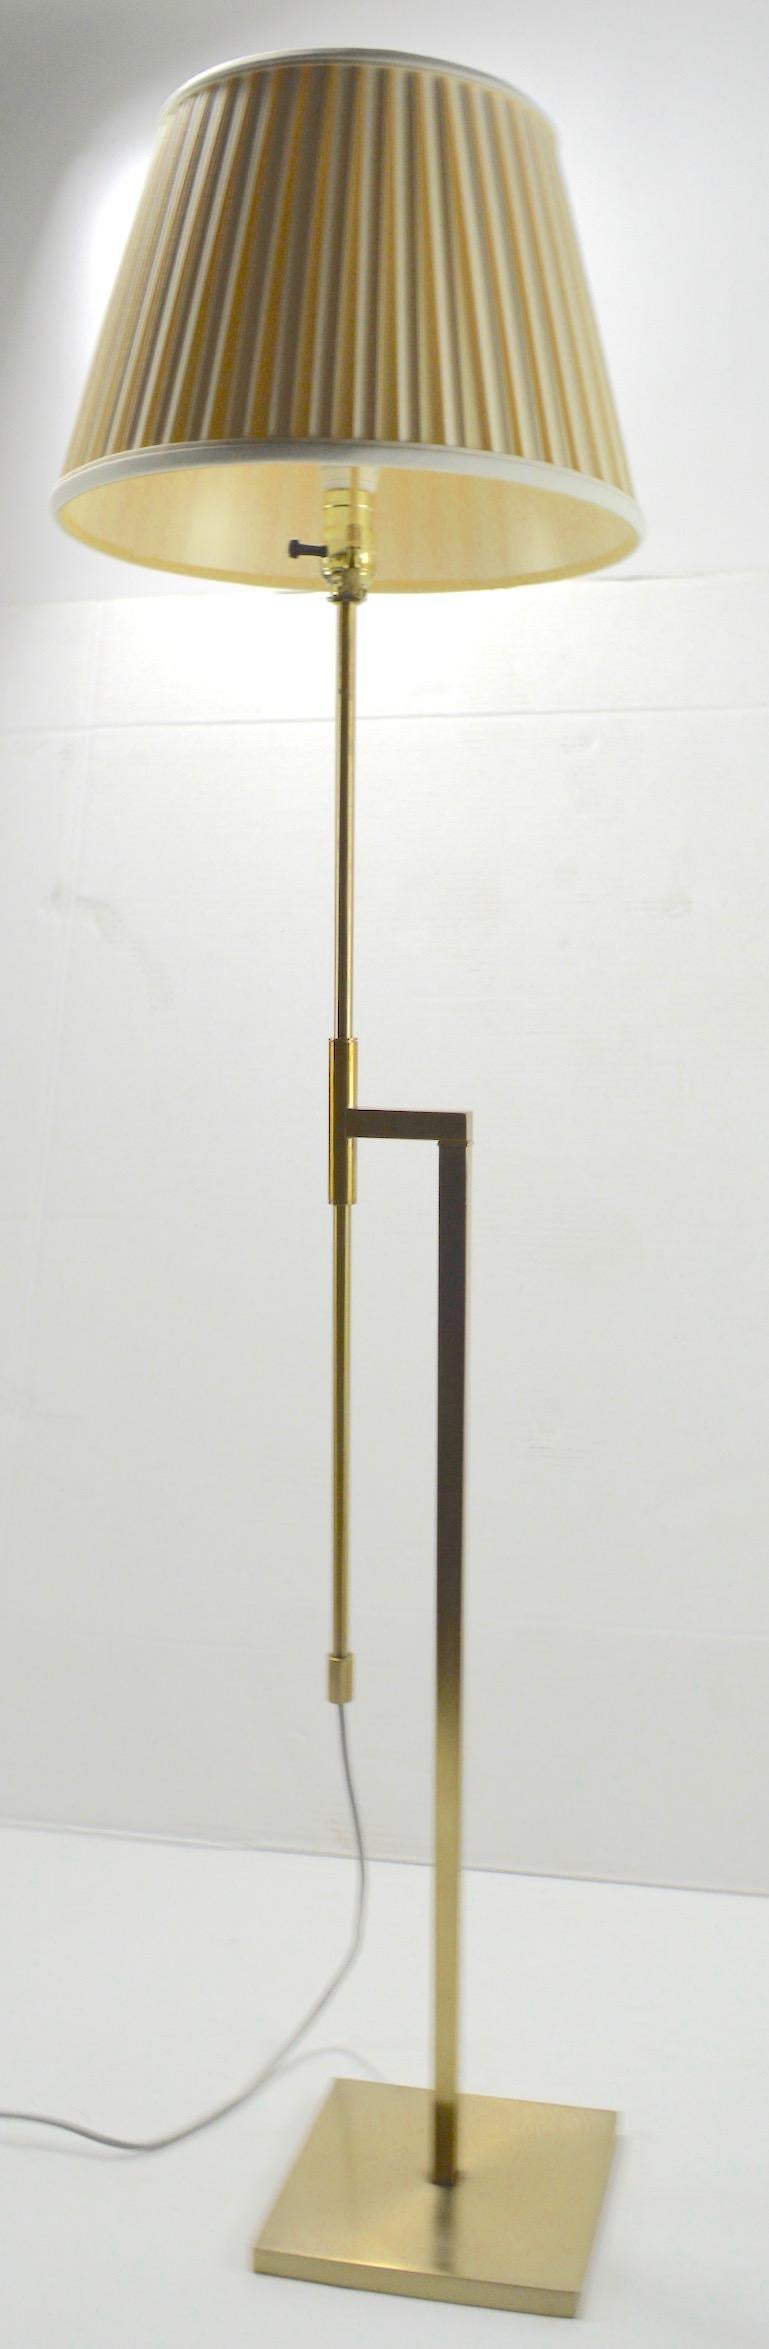 Adjustable Brass Floor Lamp by Laurel 3